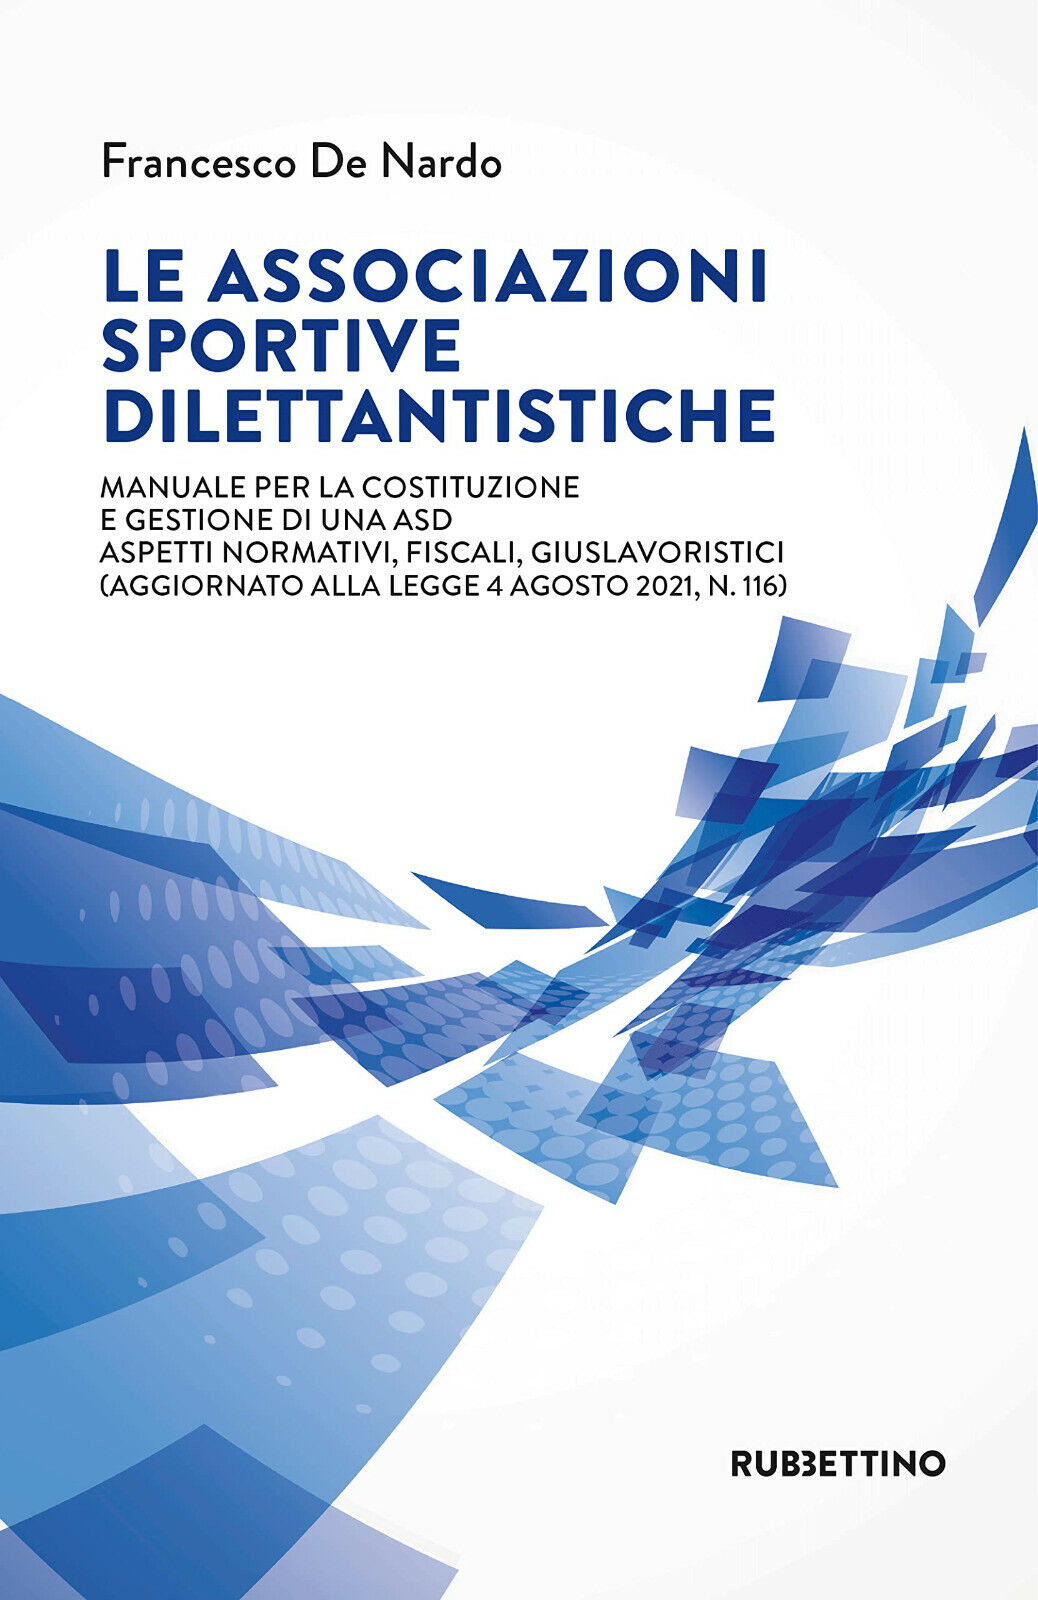 Le associazioni sportive dilettantistiche - Francesco De Nardo - 2021